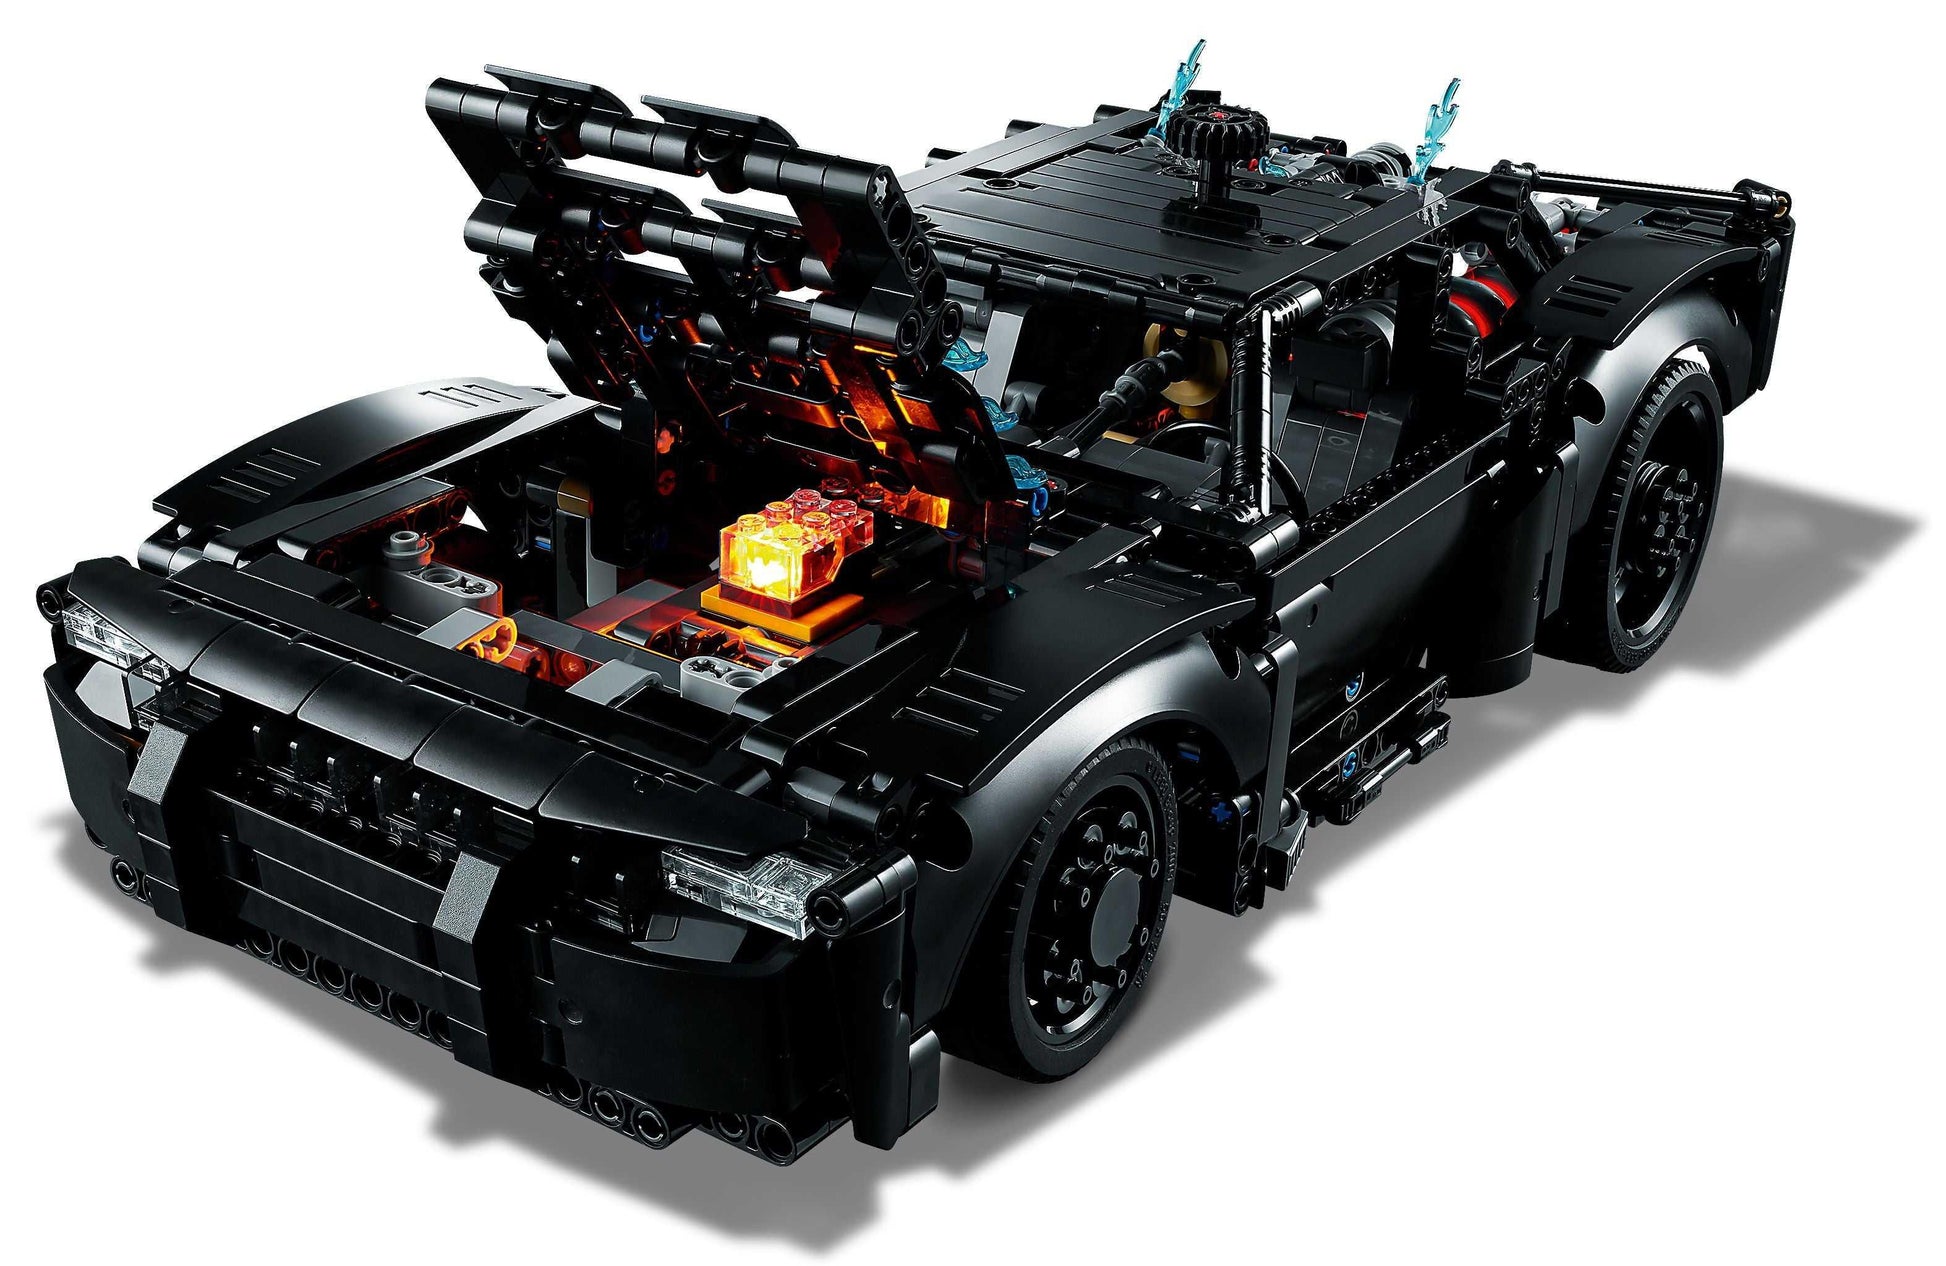 LEGO® Technic 42127 BATMANS BATMOBIL™ - Peer Online Shop